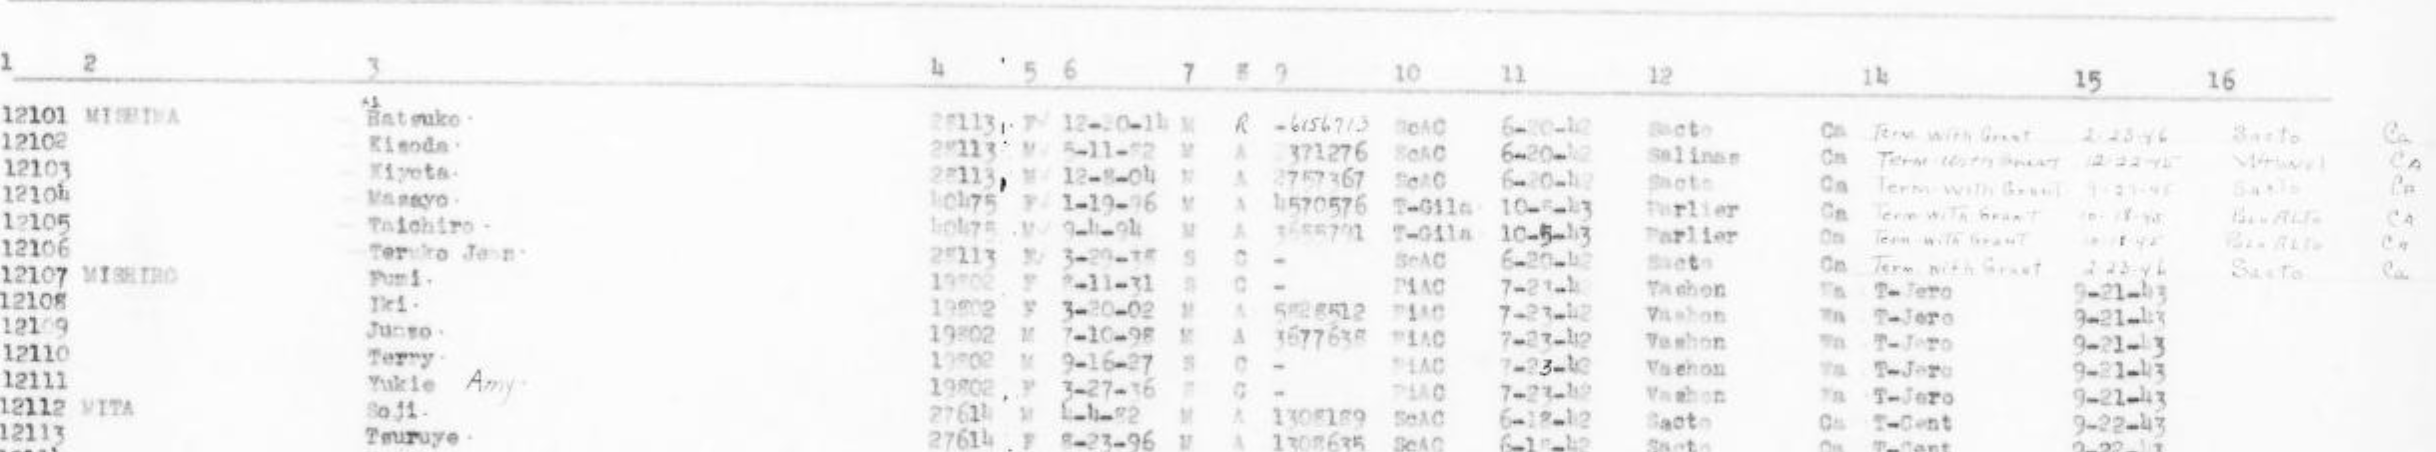 FAR-TL-March1946-Vol1-2.png